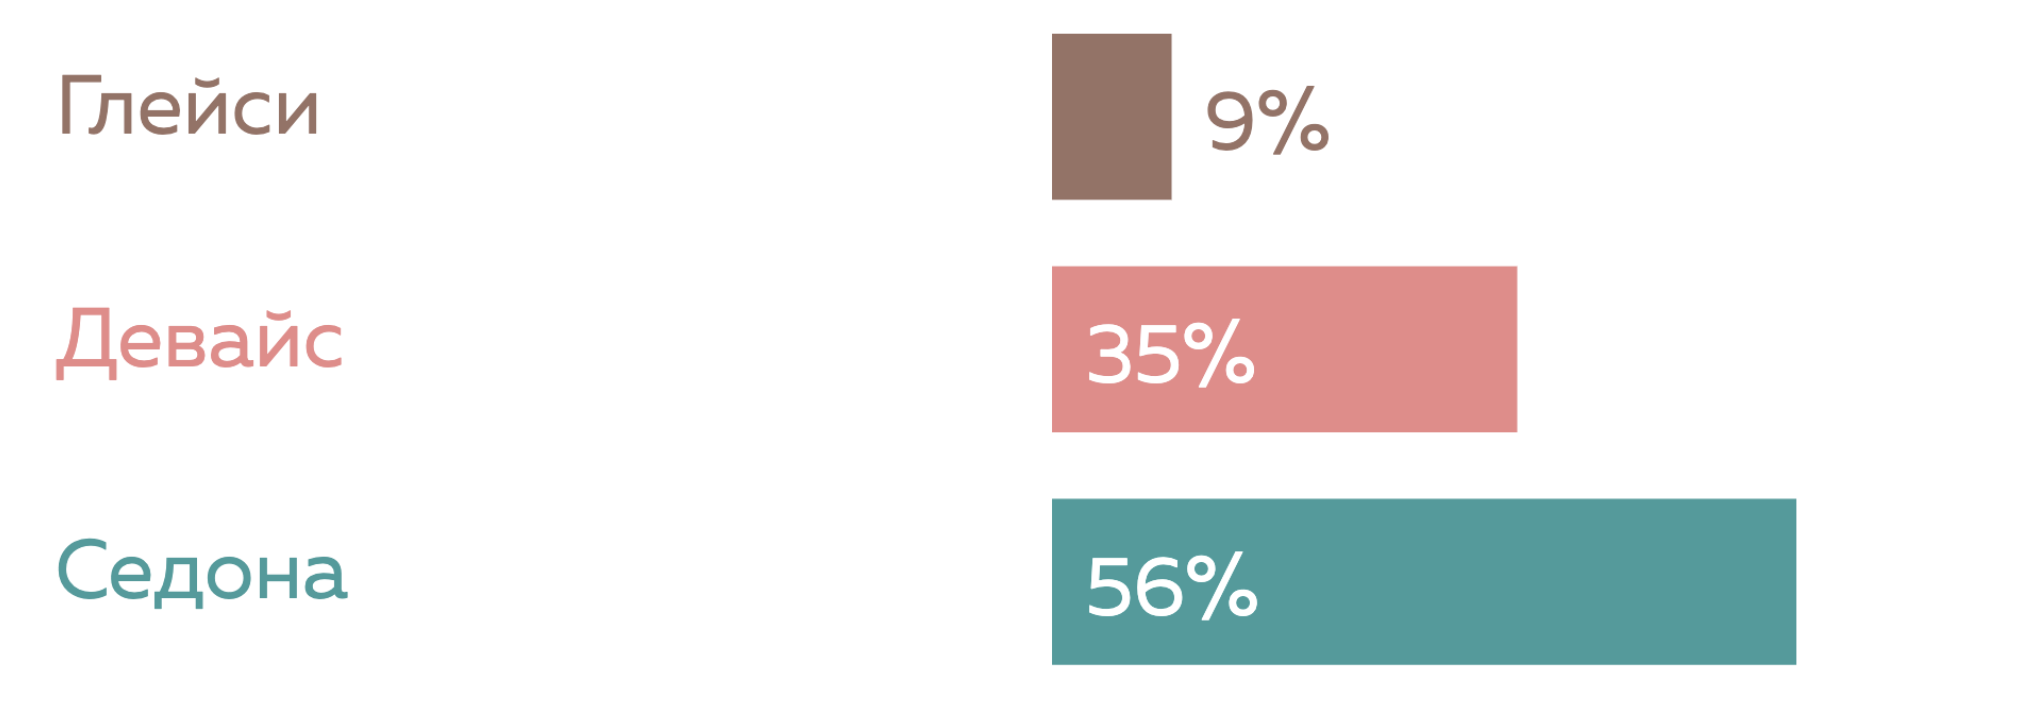 График выбора личных проектов: 35% девайс, 56% седона, 9% глейси